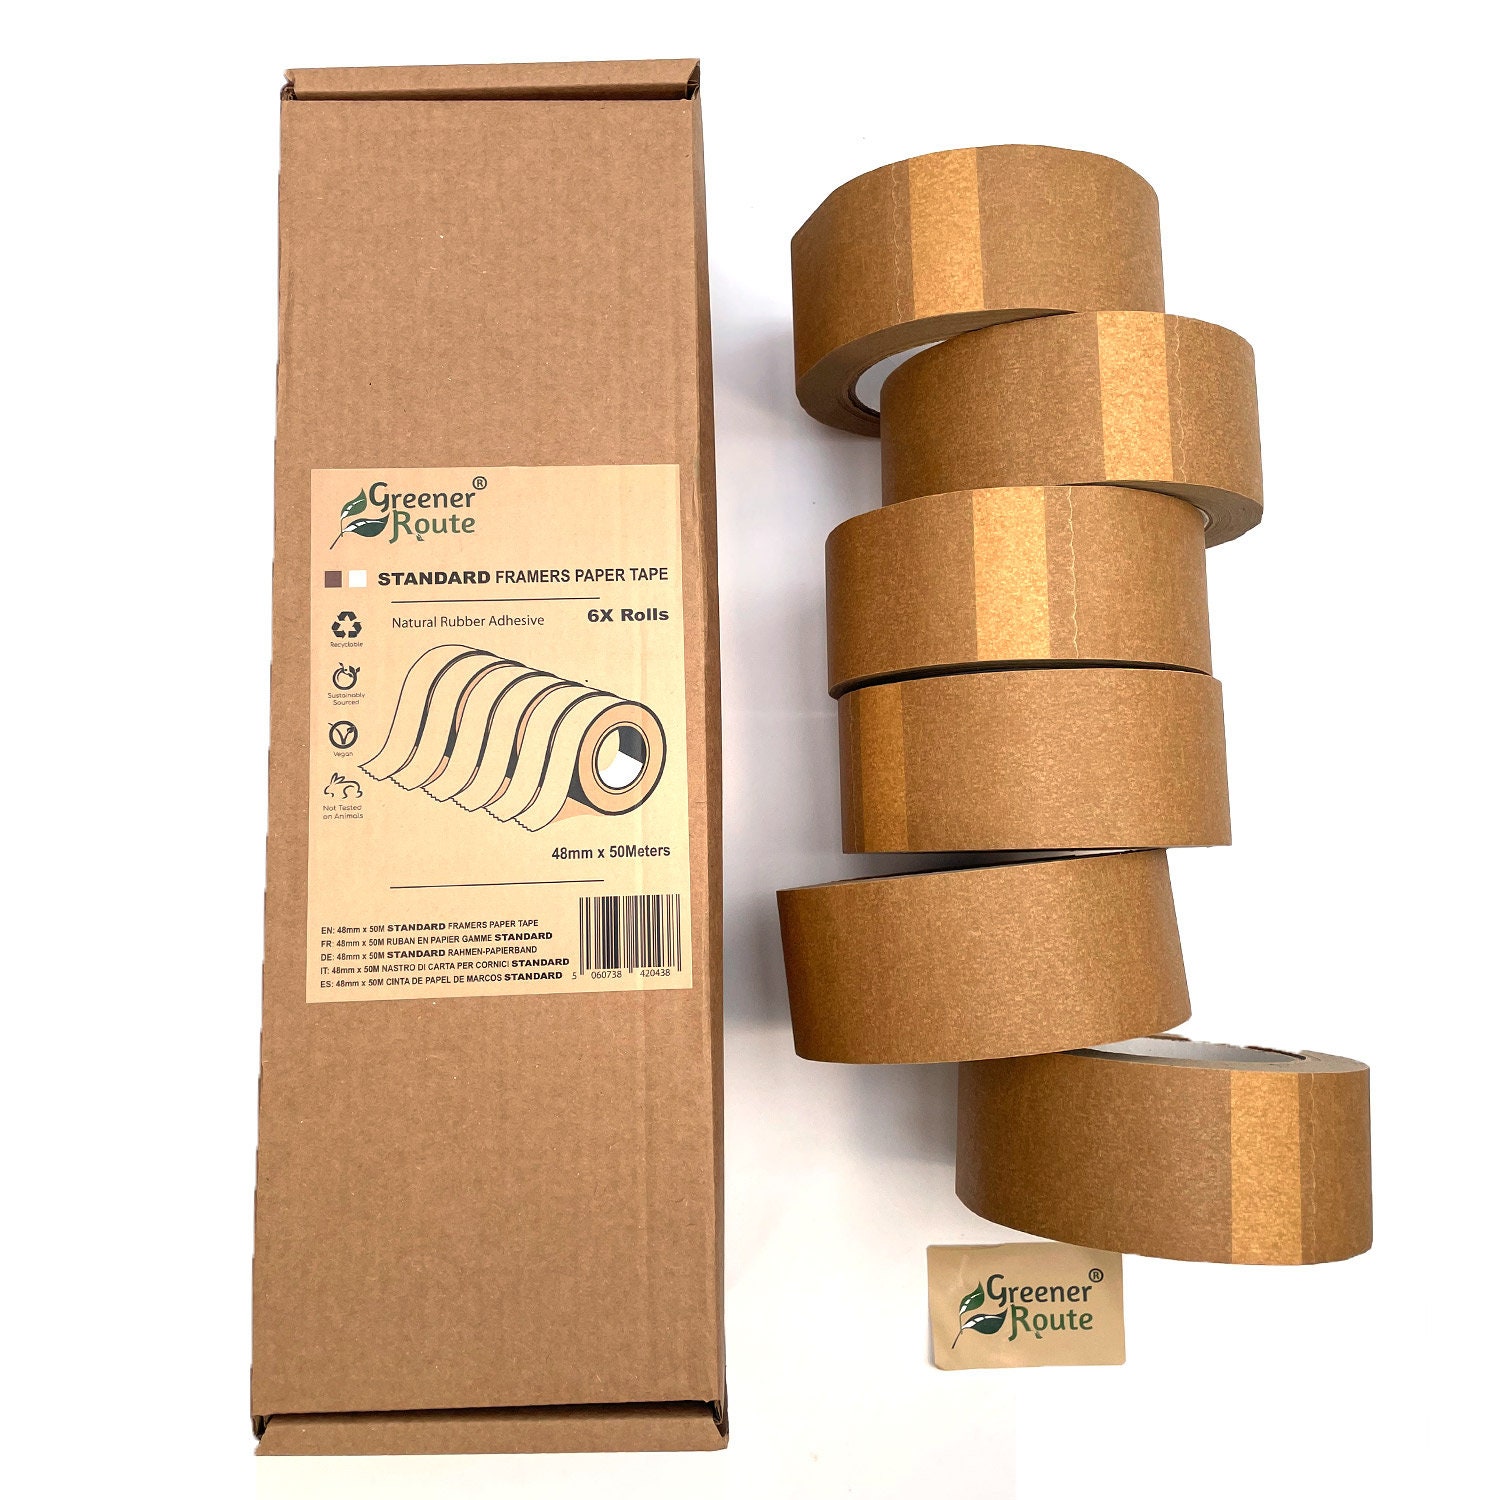 (Lot de 3) Ruban Adhésif Papier Kraft pour Encadrement, Masquage ou  Emballage, 25mm x 50mm - Ecologique, sans Plastique - 100% Recyclable